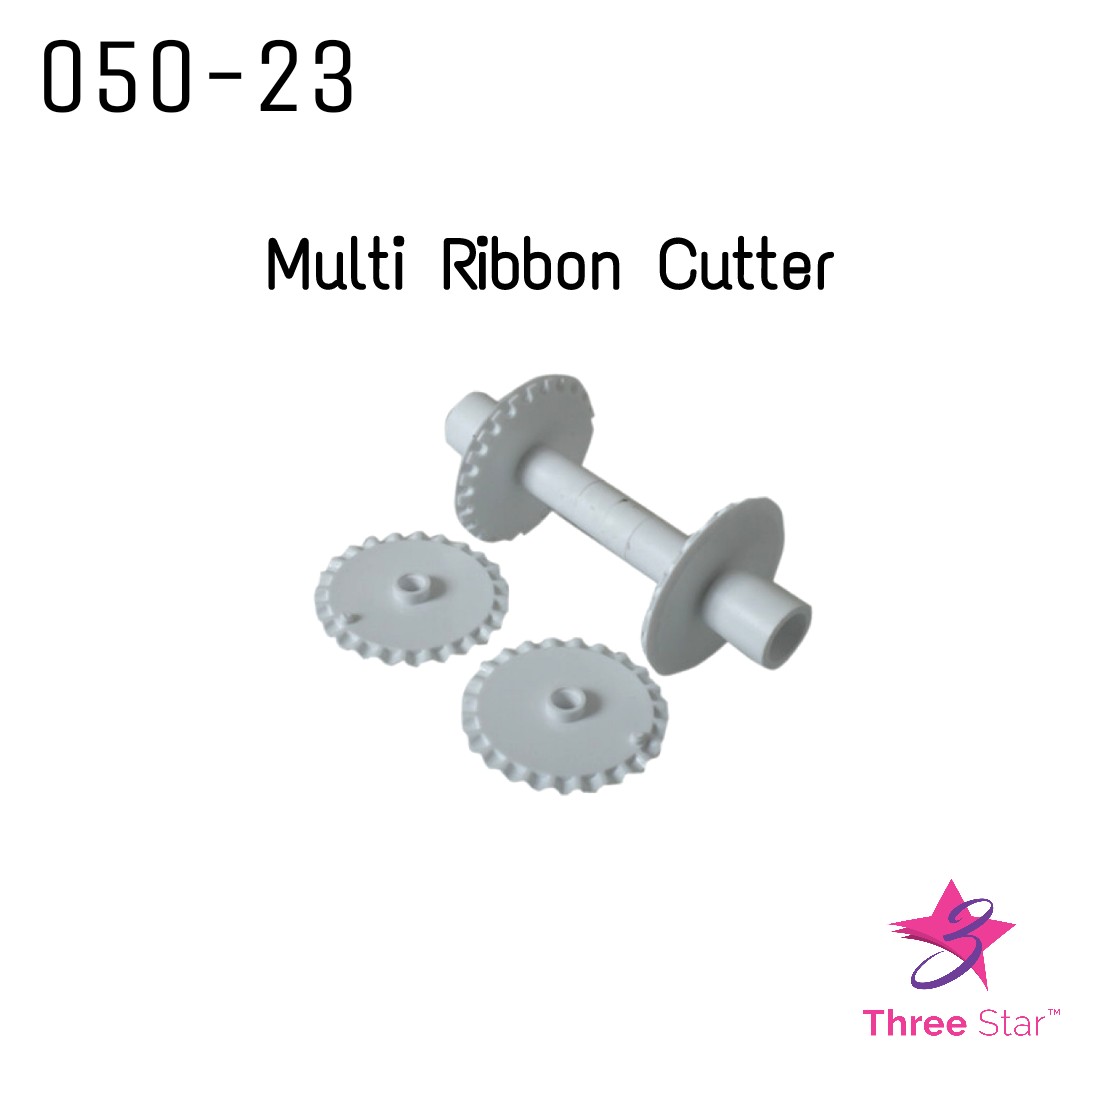 Multi Ribbon Cutter